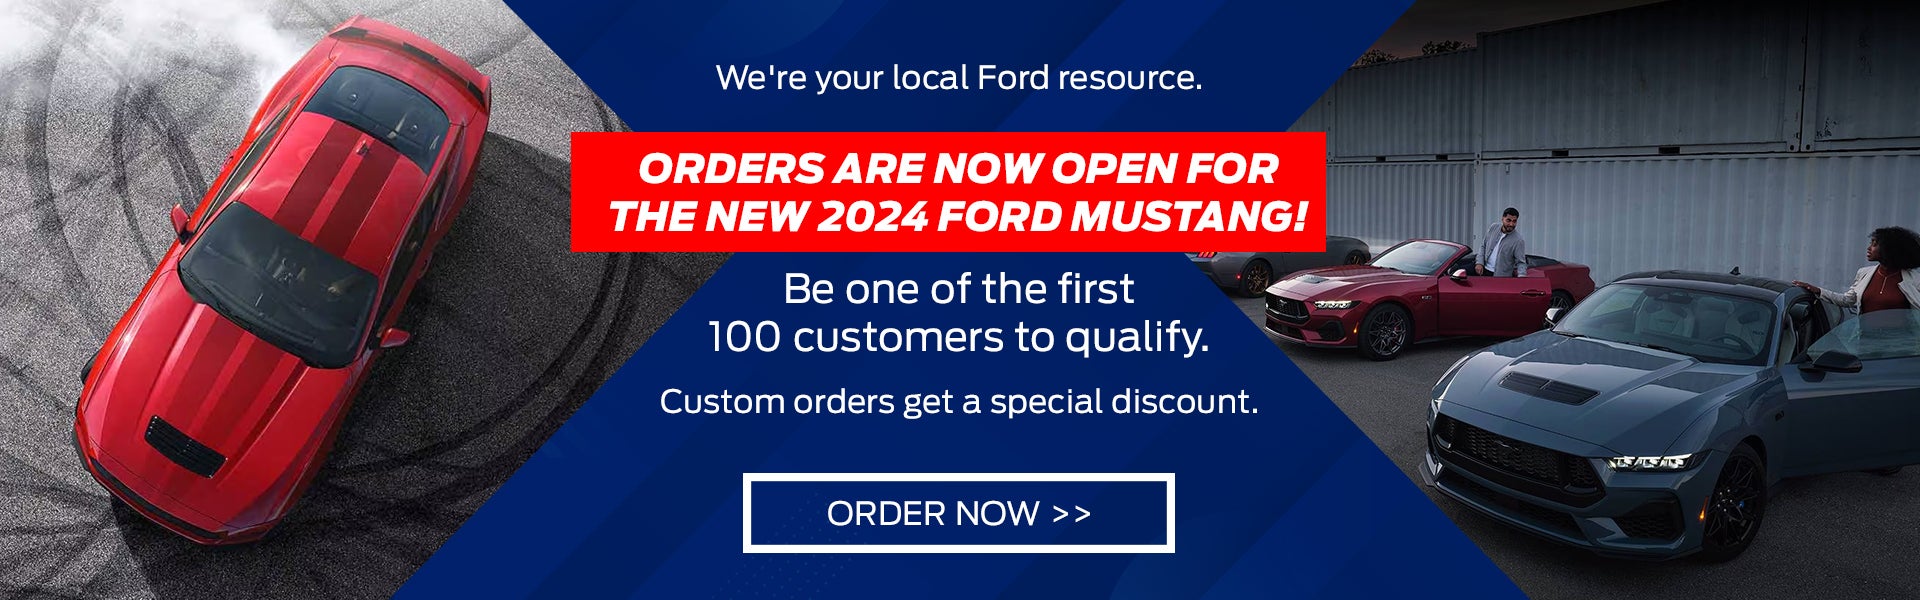 New 2024 Ford Mustang pre order in Alpharetta, GA